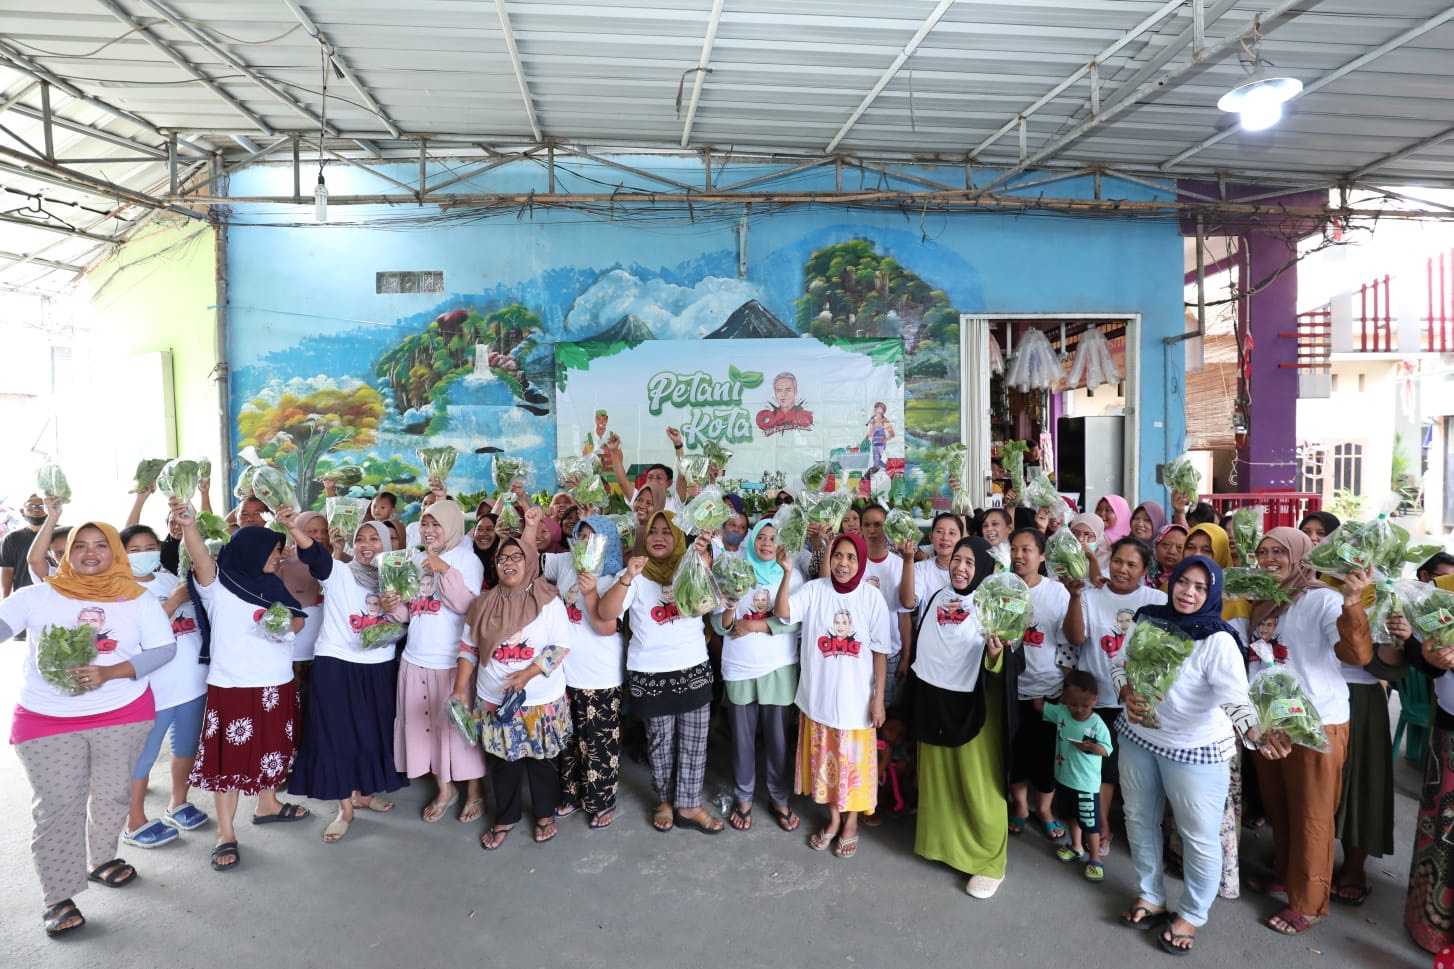 Jumat Berkah, Puluhan Warga Cengkareng Ikut Program 'Petani Kota' Bersama Relawan Ganjar